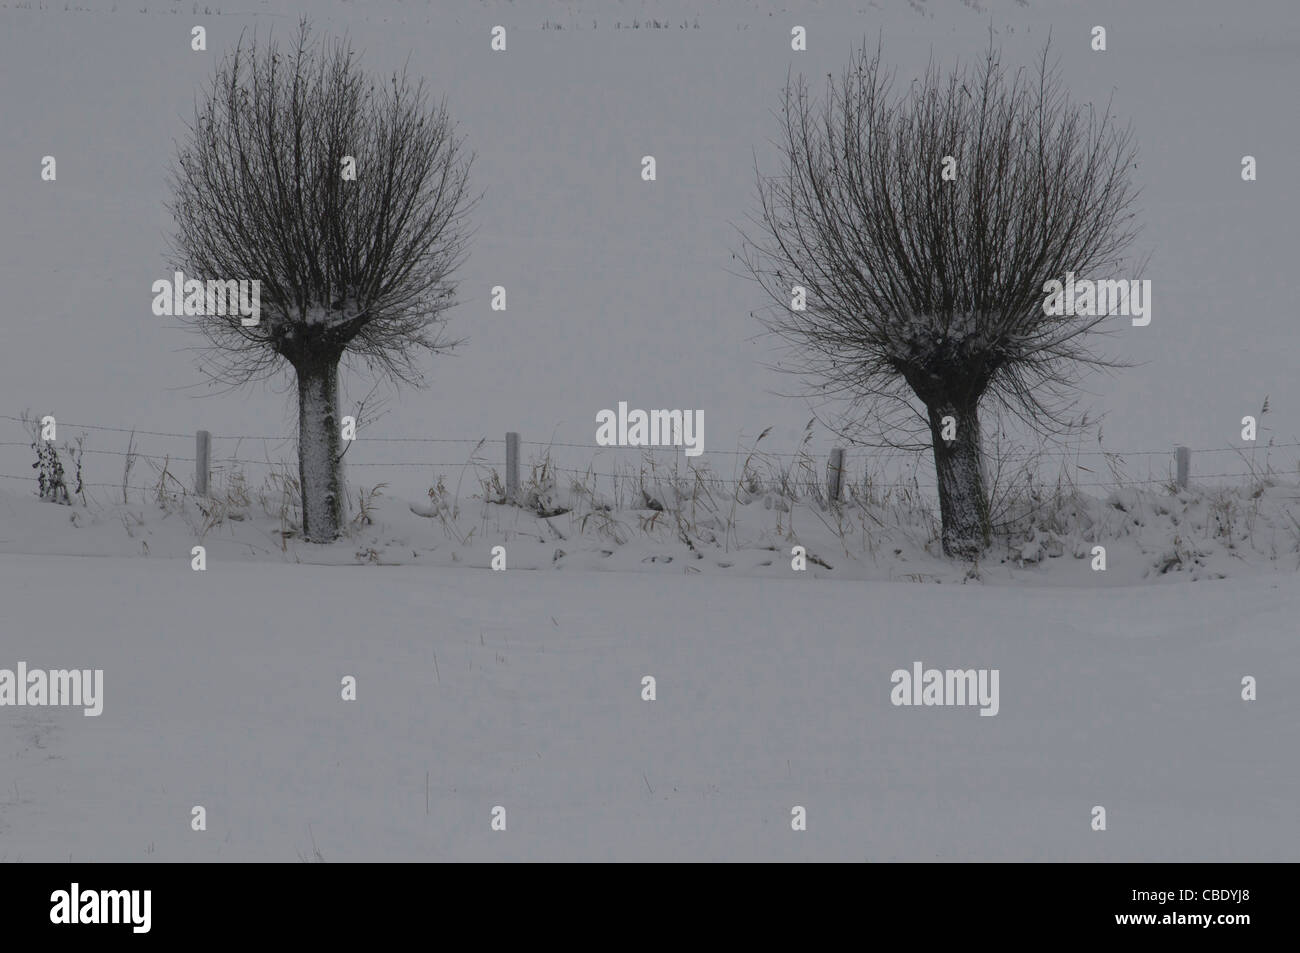 Misty árboles en un paisaje de nieve. valla, carretera, niebla Foto de stock